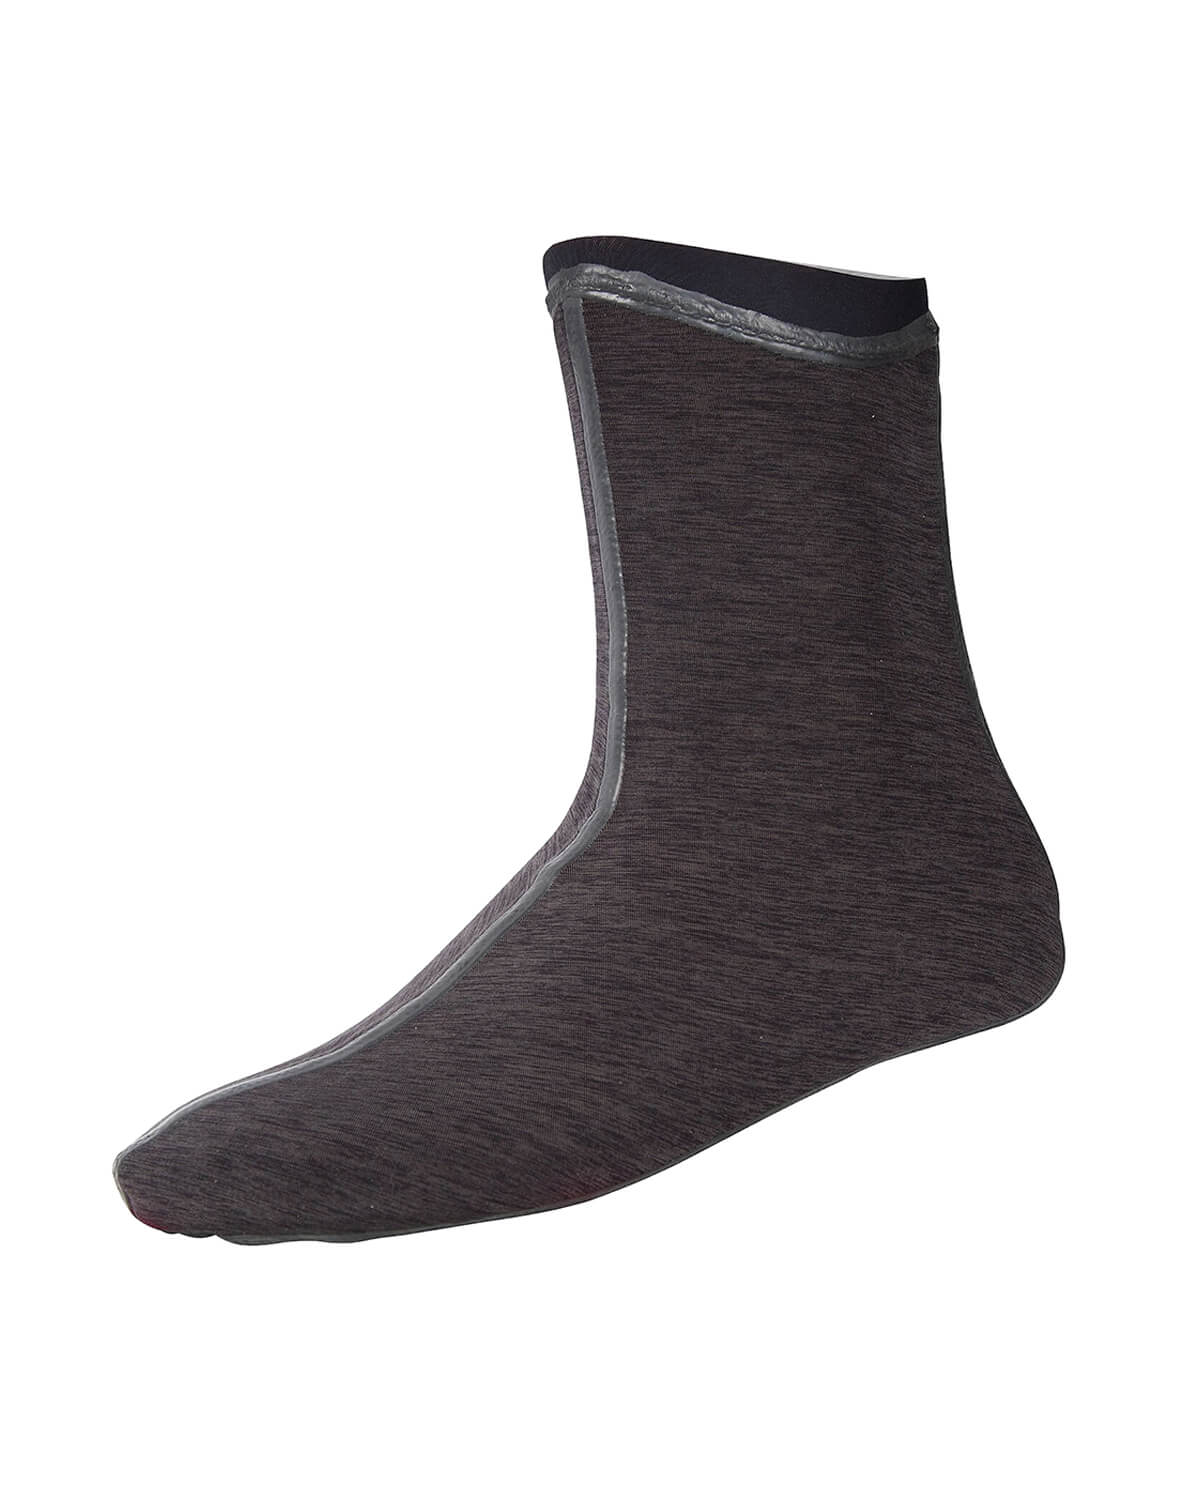 1.5mm NRS HydroSkin Wetsuit Socks